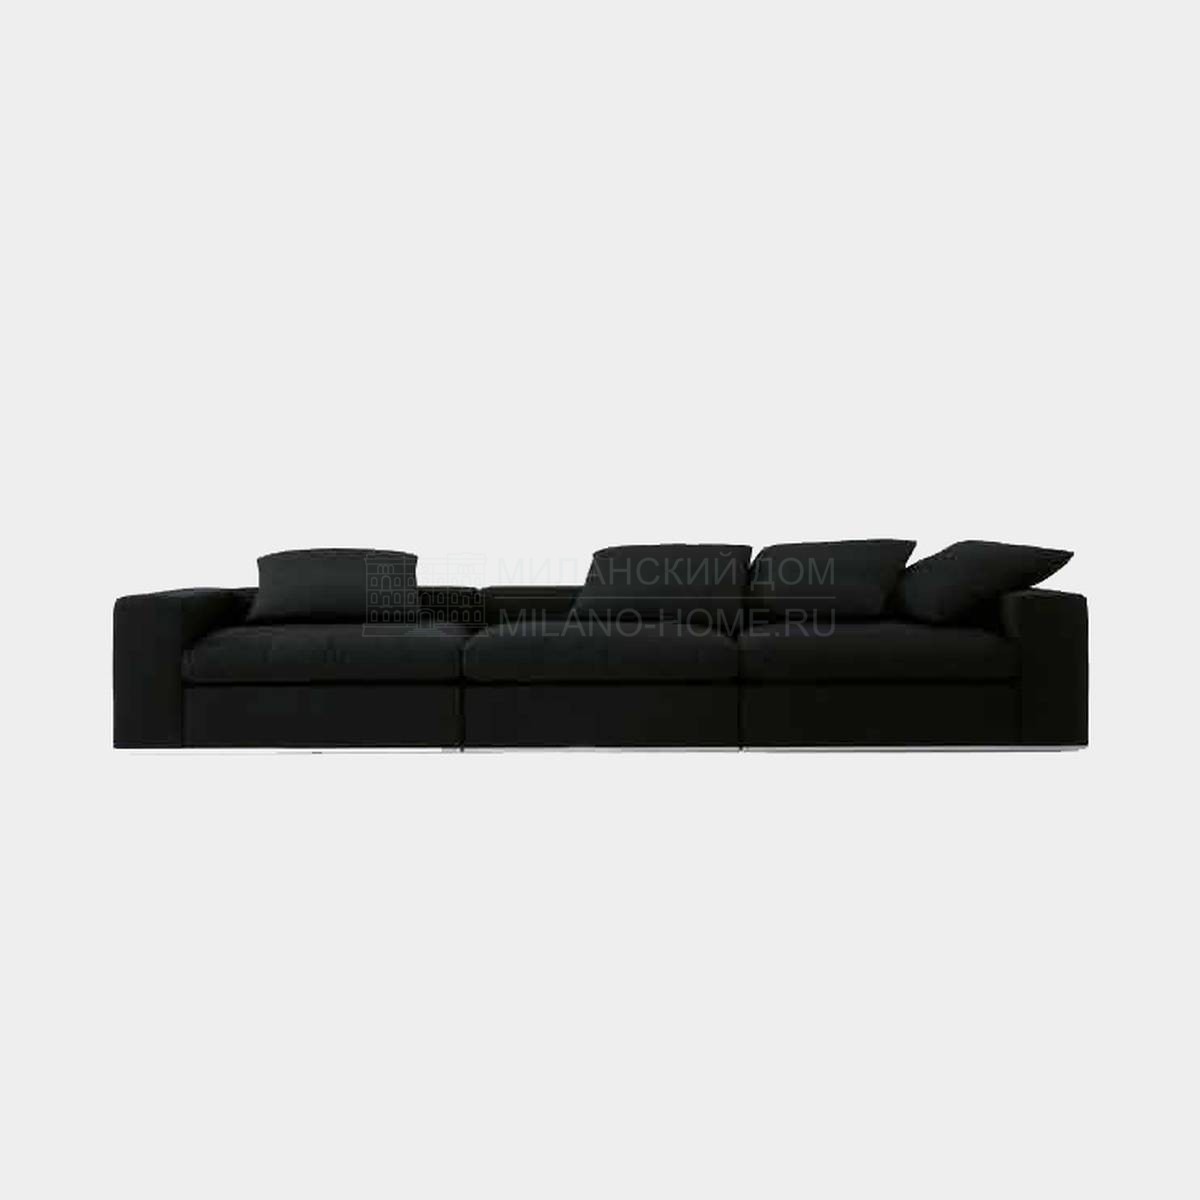 Модульный диван Zar/ sofa из Италии фабрики NUBE